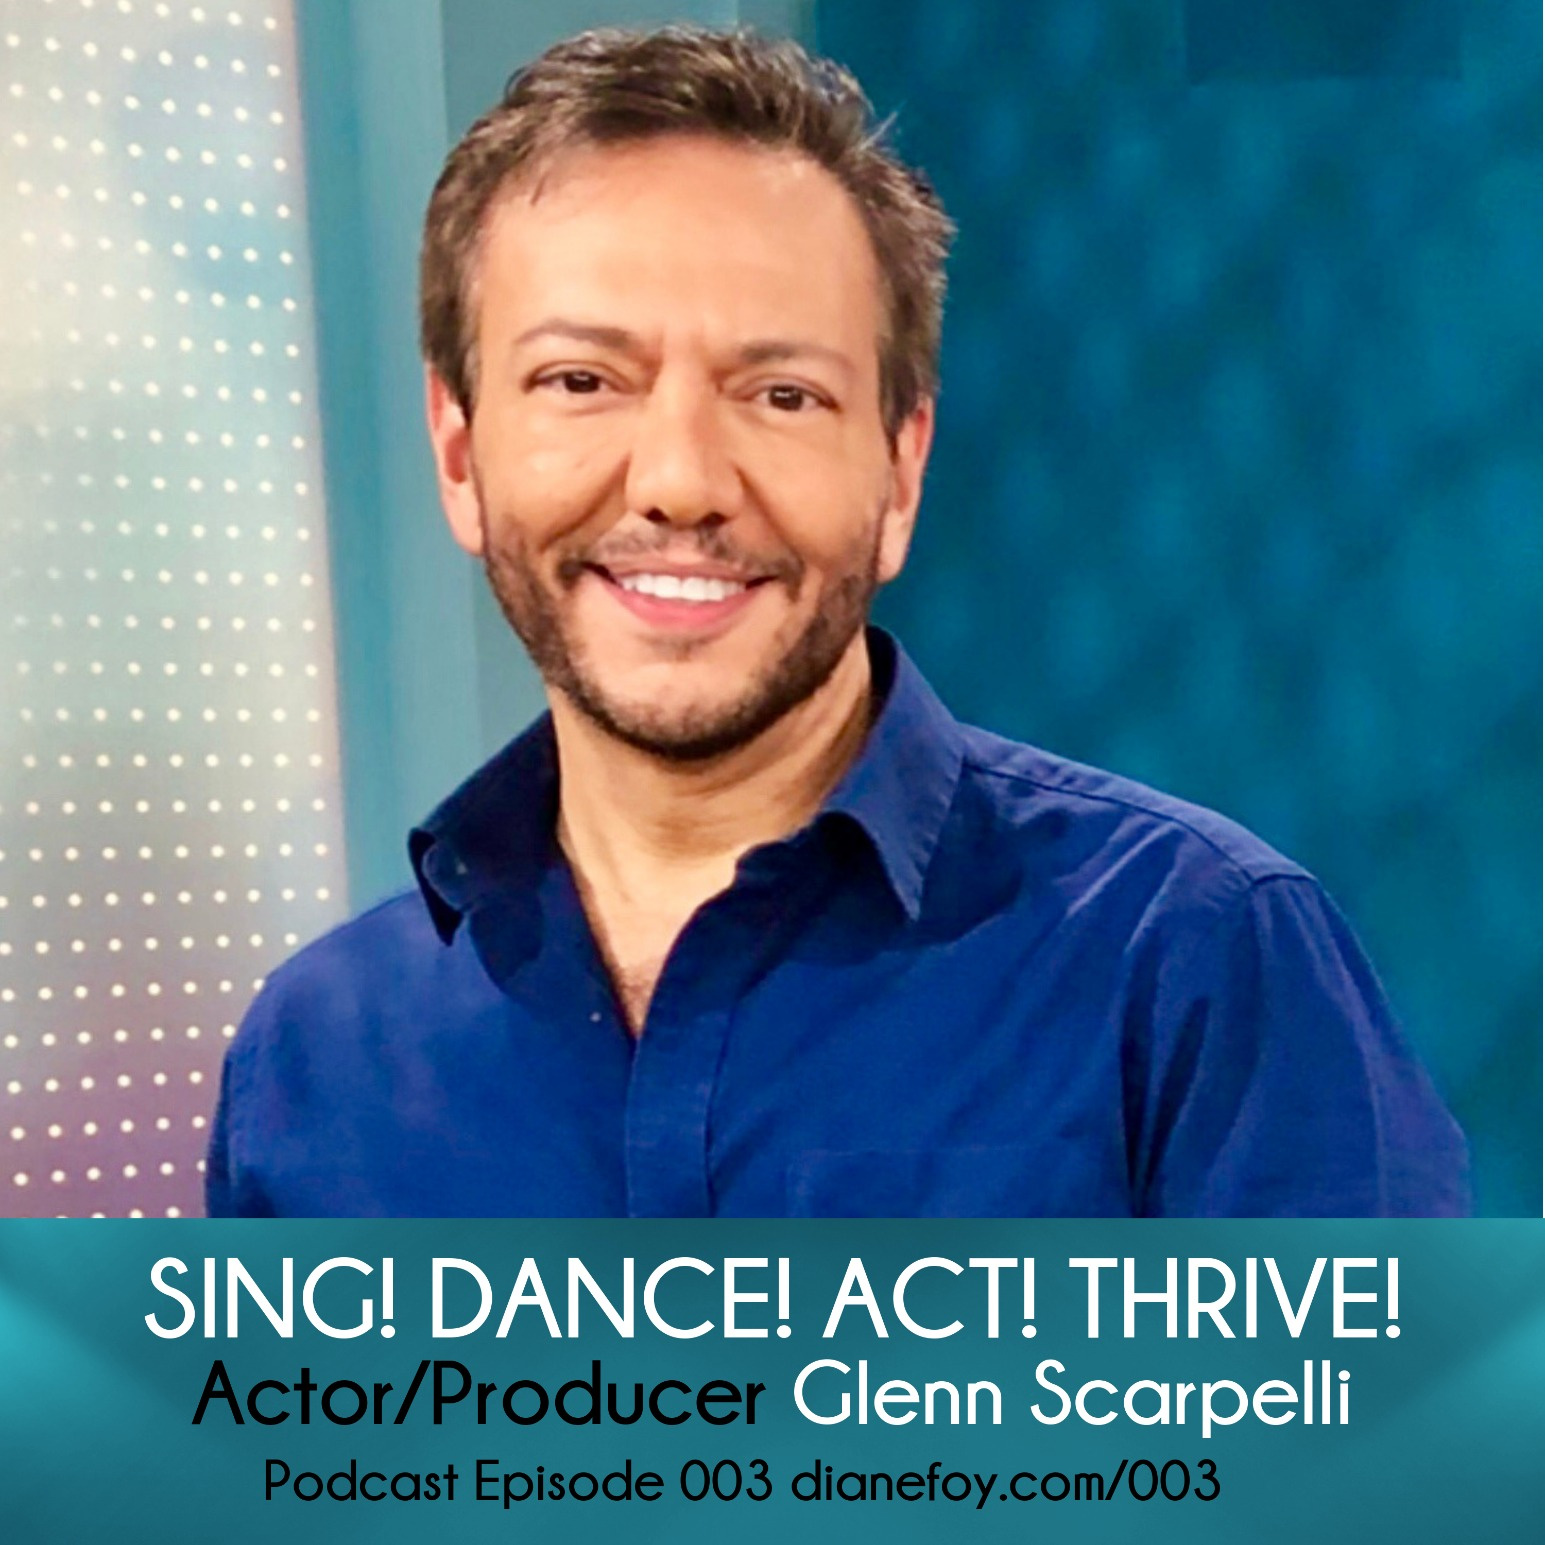 Glenn Scarpelli, Actor/Producer hero artwork